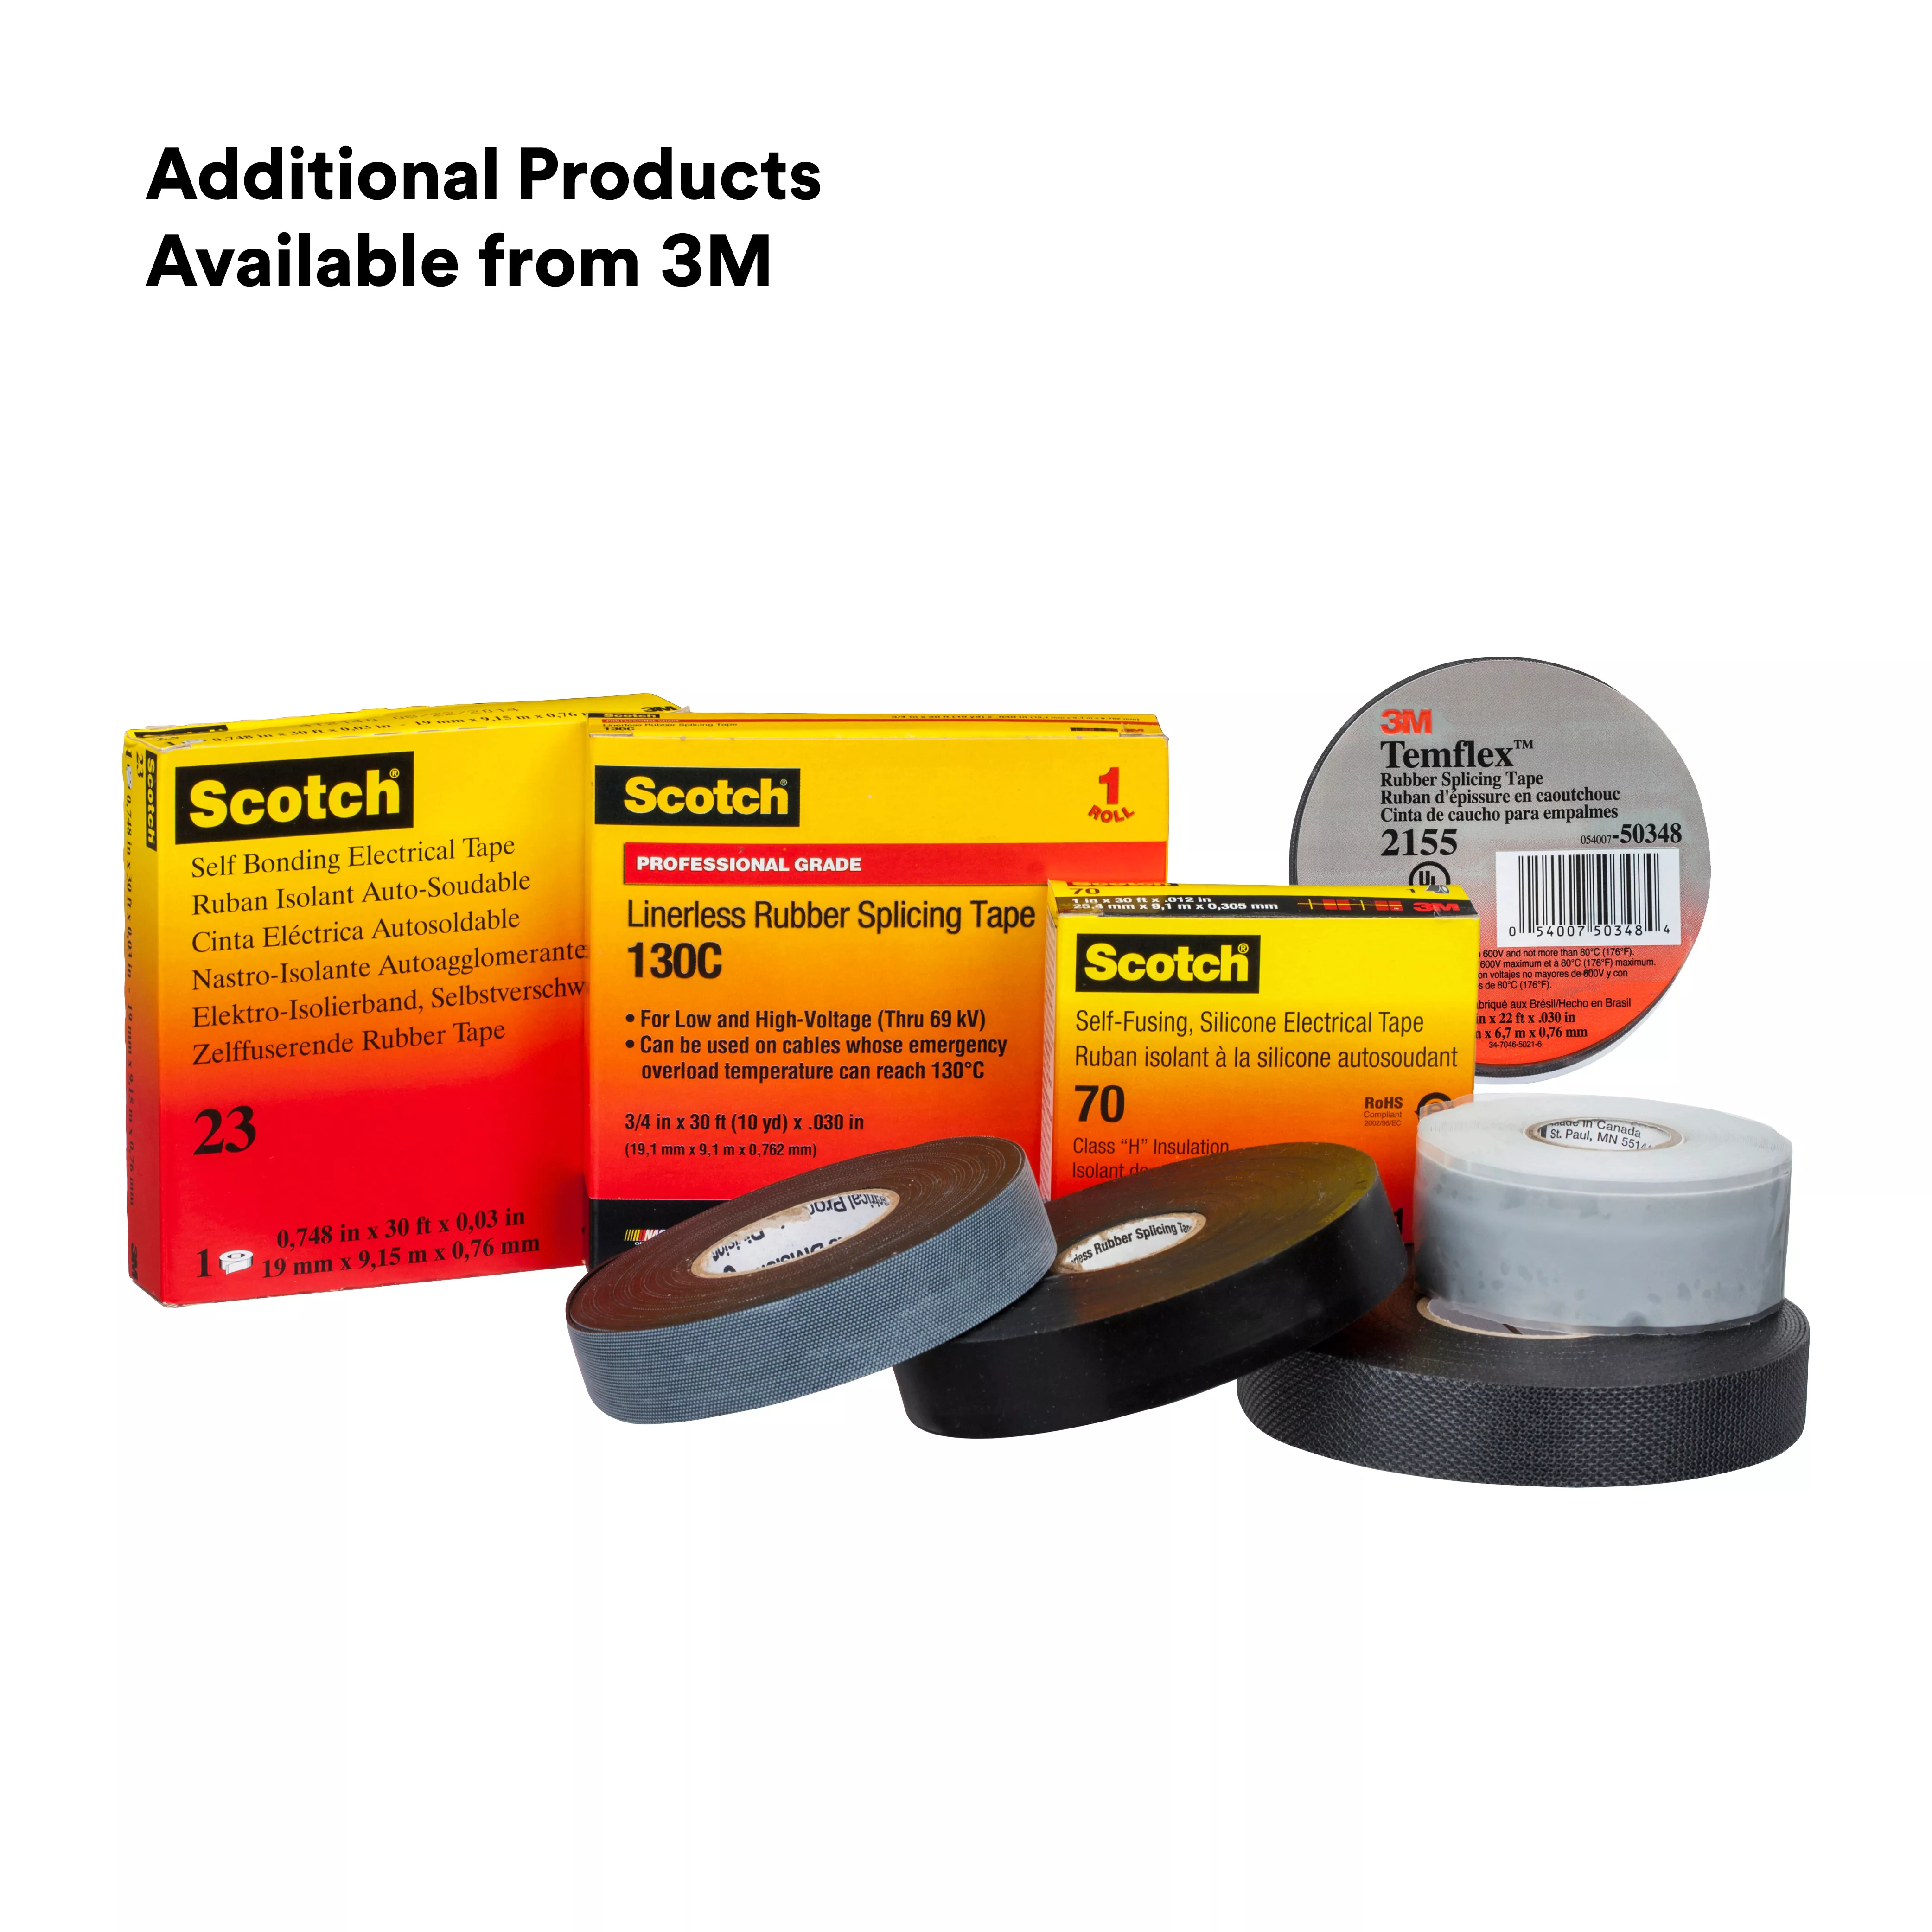 SKU 7000006086 | Scotch® Linerless Rubber Splicing Tape 130C